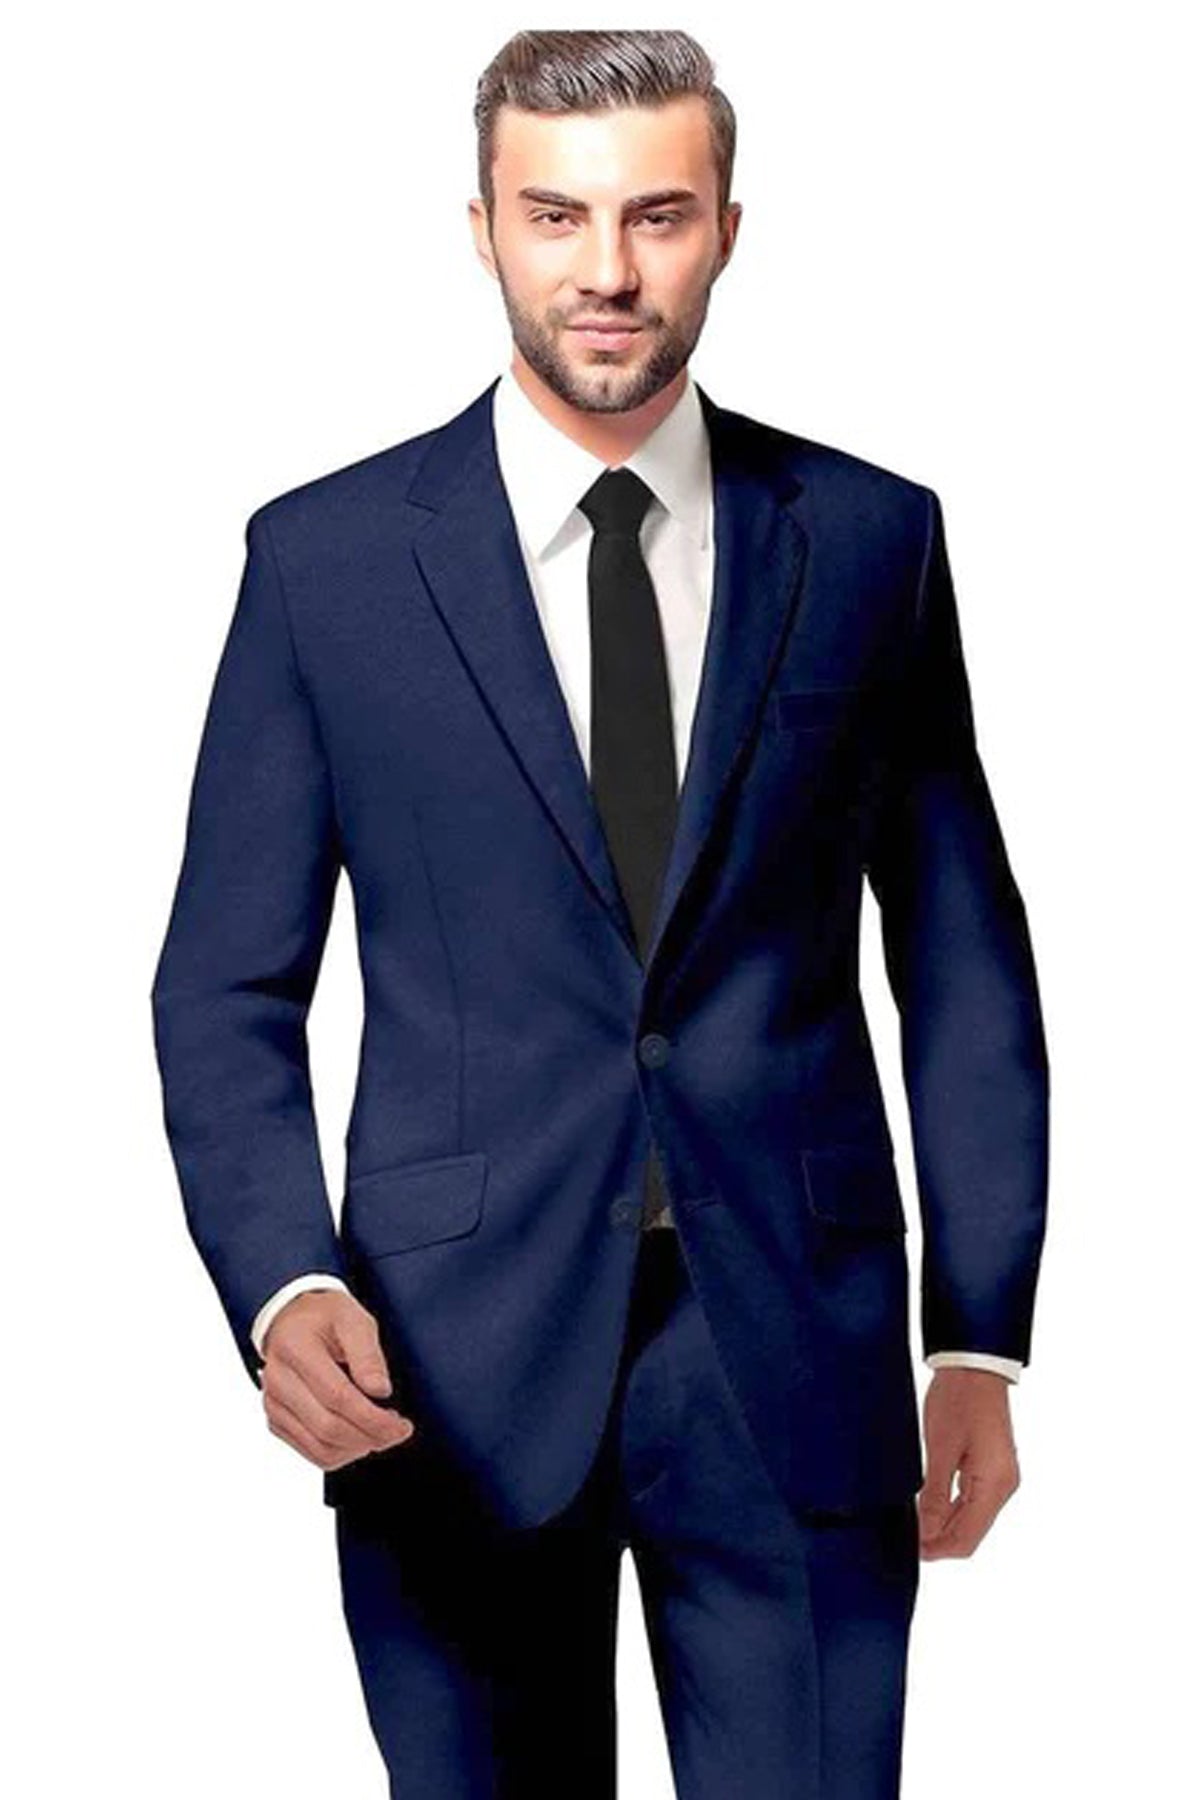 Mens Suit: Buy Royal Blue Suit for Men